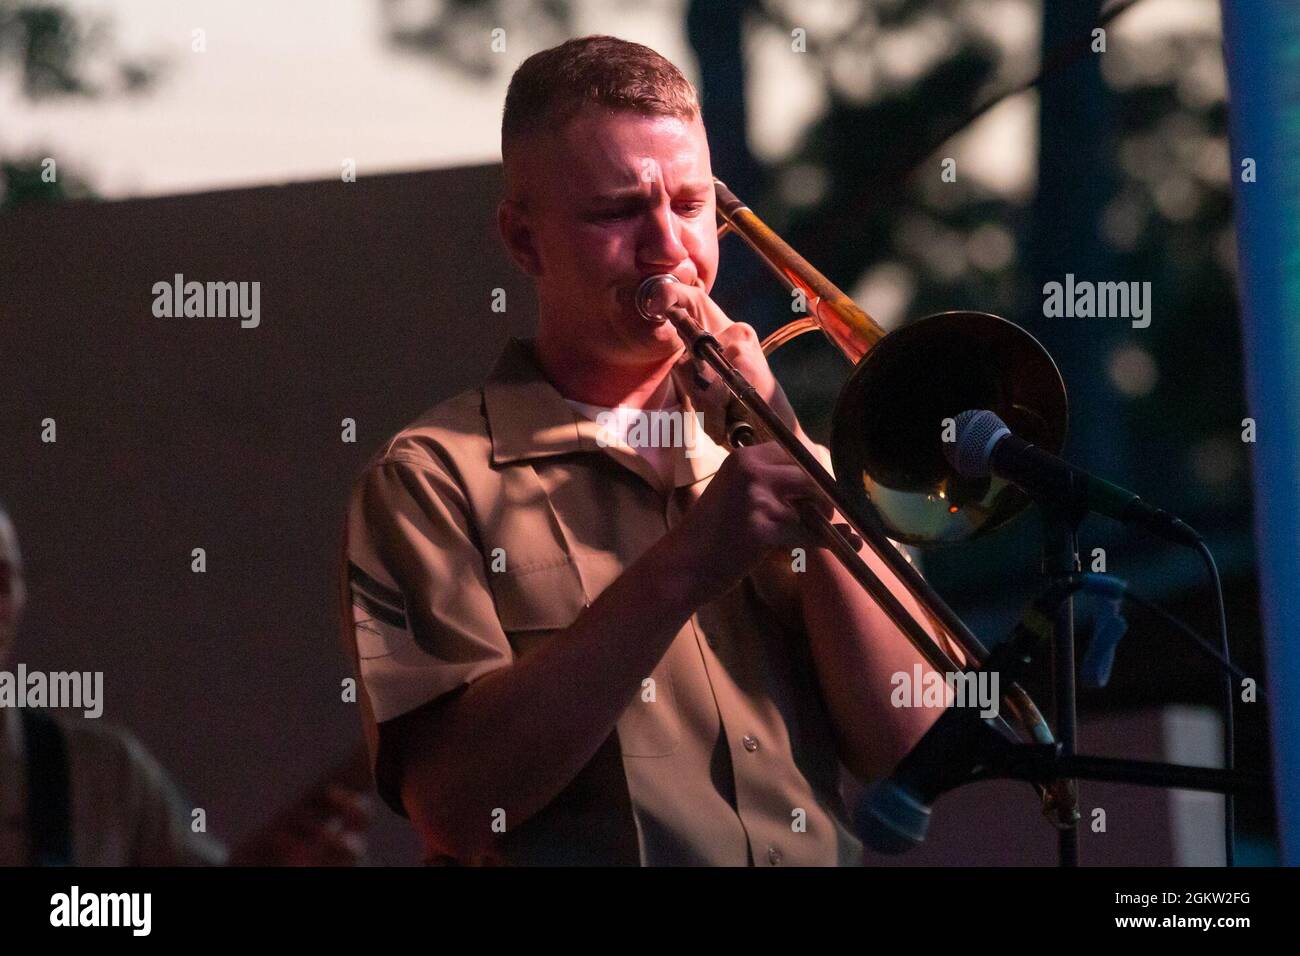 U.S. Marine Corps CPL. Timothy Zettlemoyer, ein Posaunist für die 2nd Marine Aircraft Wing Band, tritt während eines Independence Day Konzerts im Havelock City Park, North Carolina, am 3. Juli 2021 auf. Das Konzert bot den Marines die Möglichkeit, sich mit der Gemeinschaft zu engagieren. Stockfoto